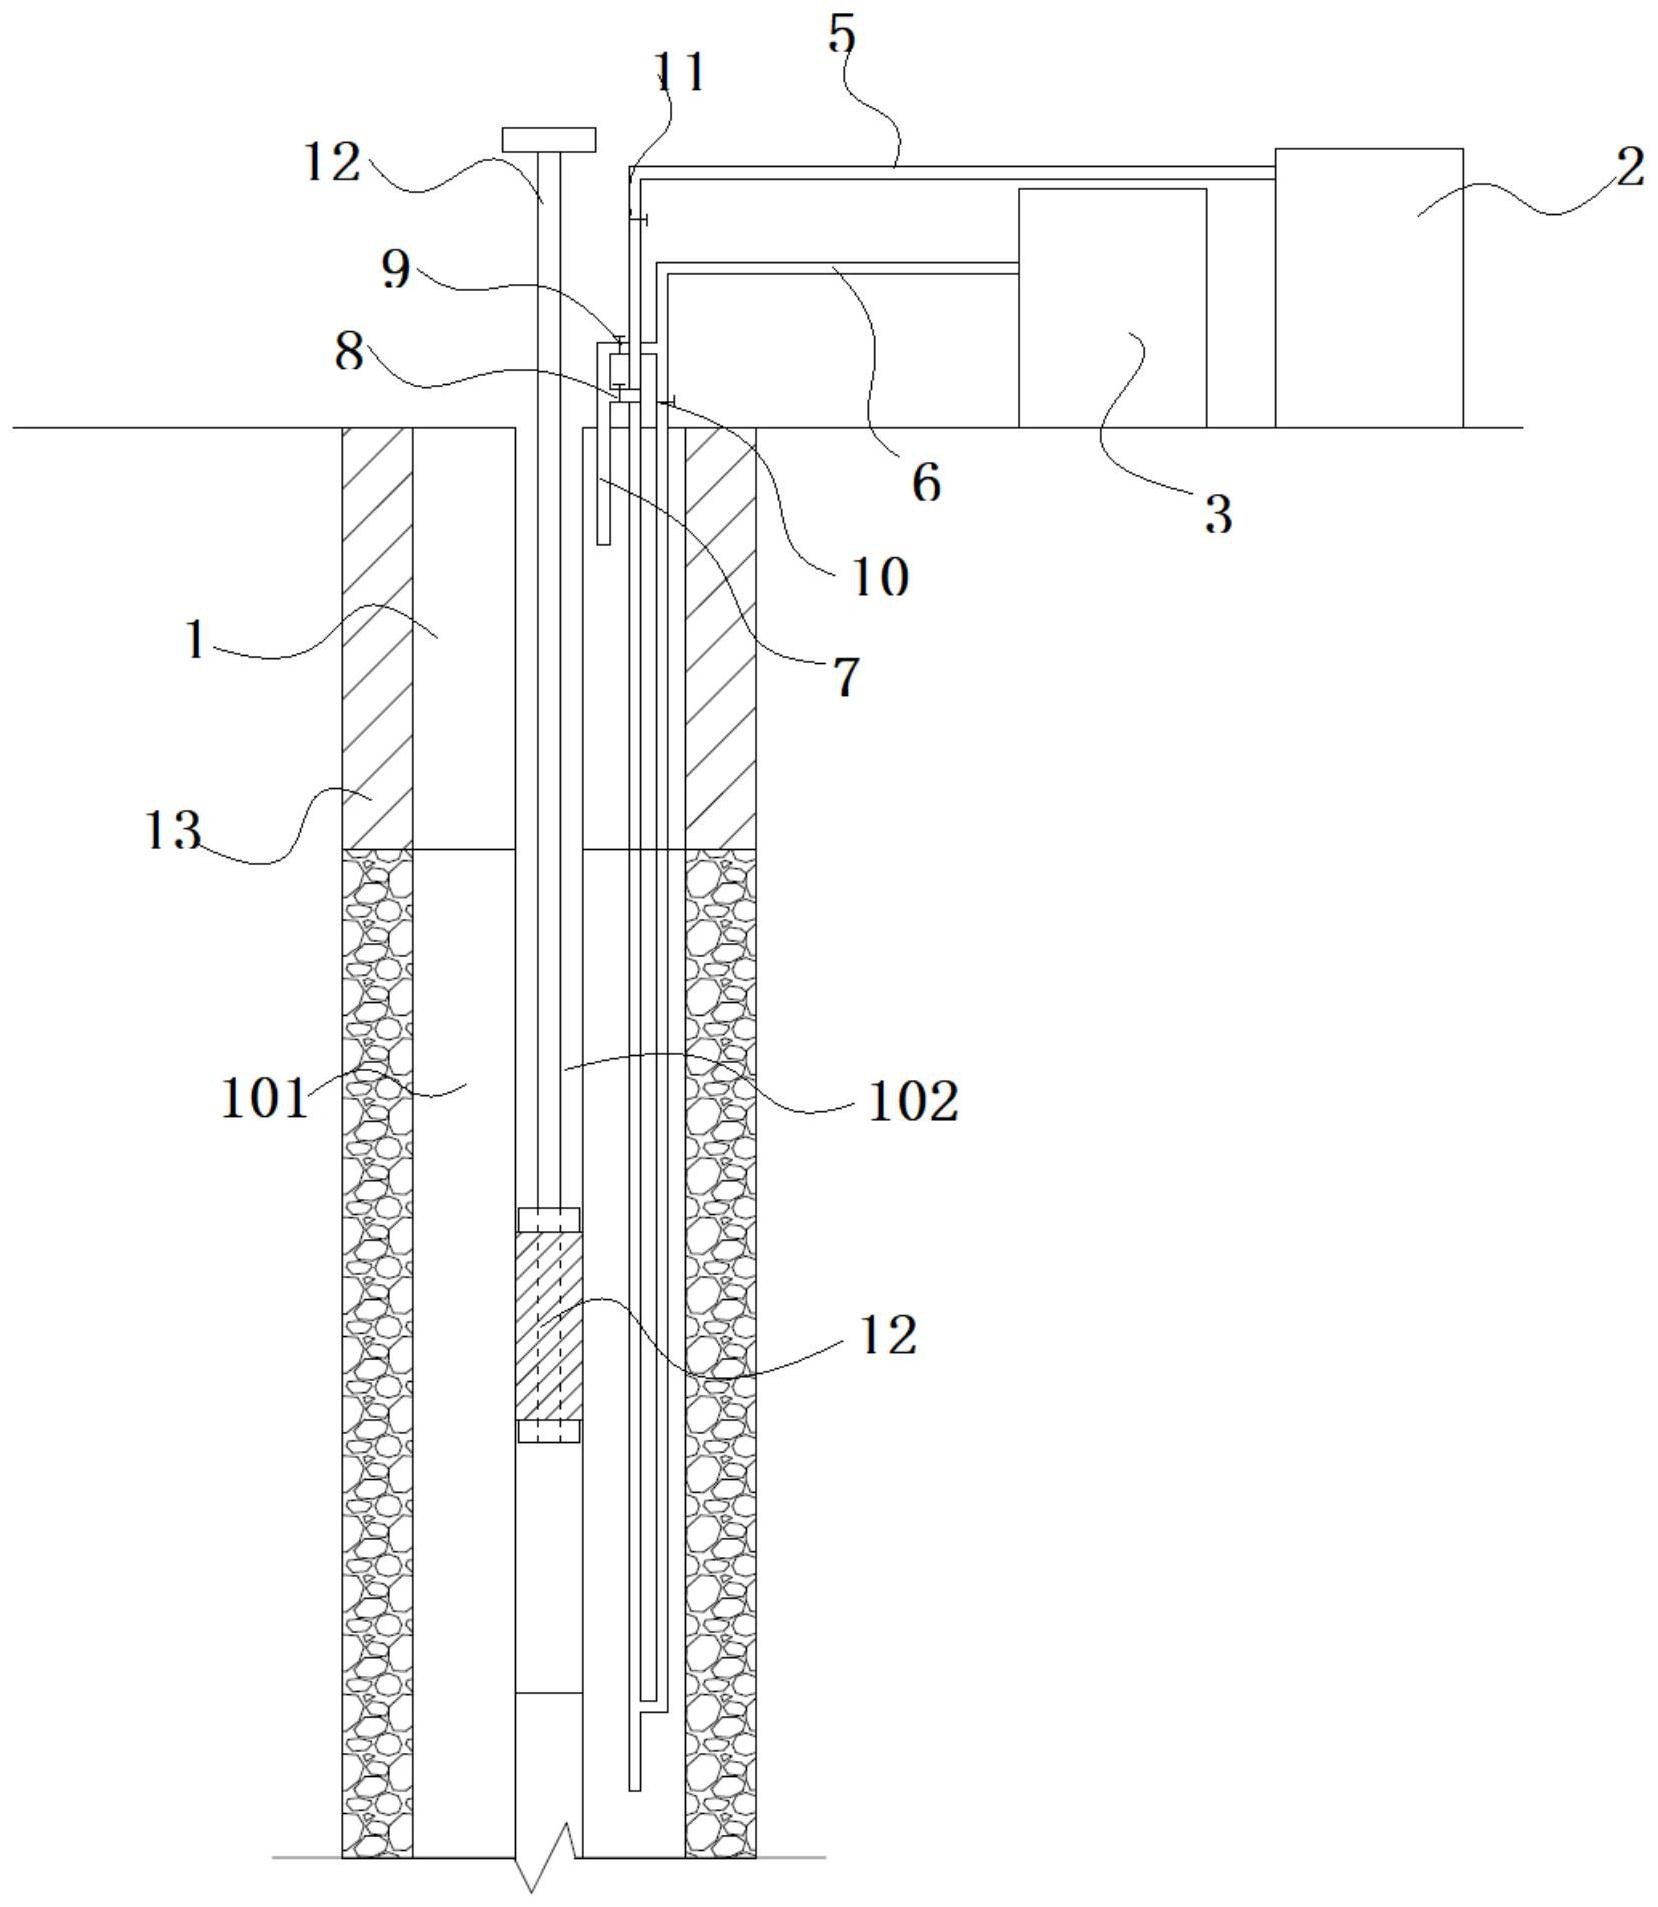 的正负压联合降水井结构,排水管上设置有排水孔;真空泵连通至抽水管